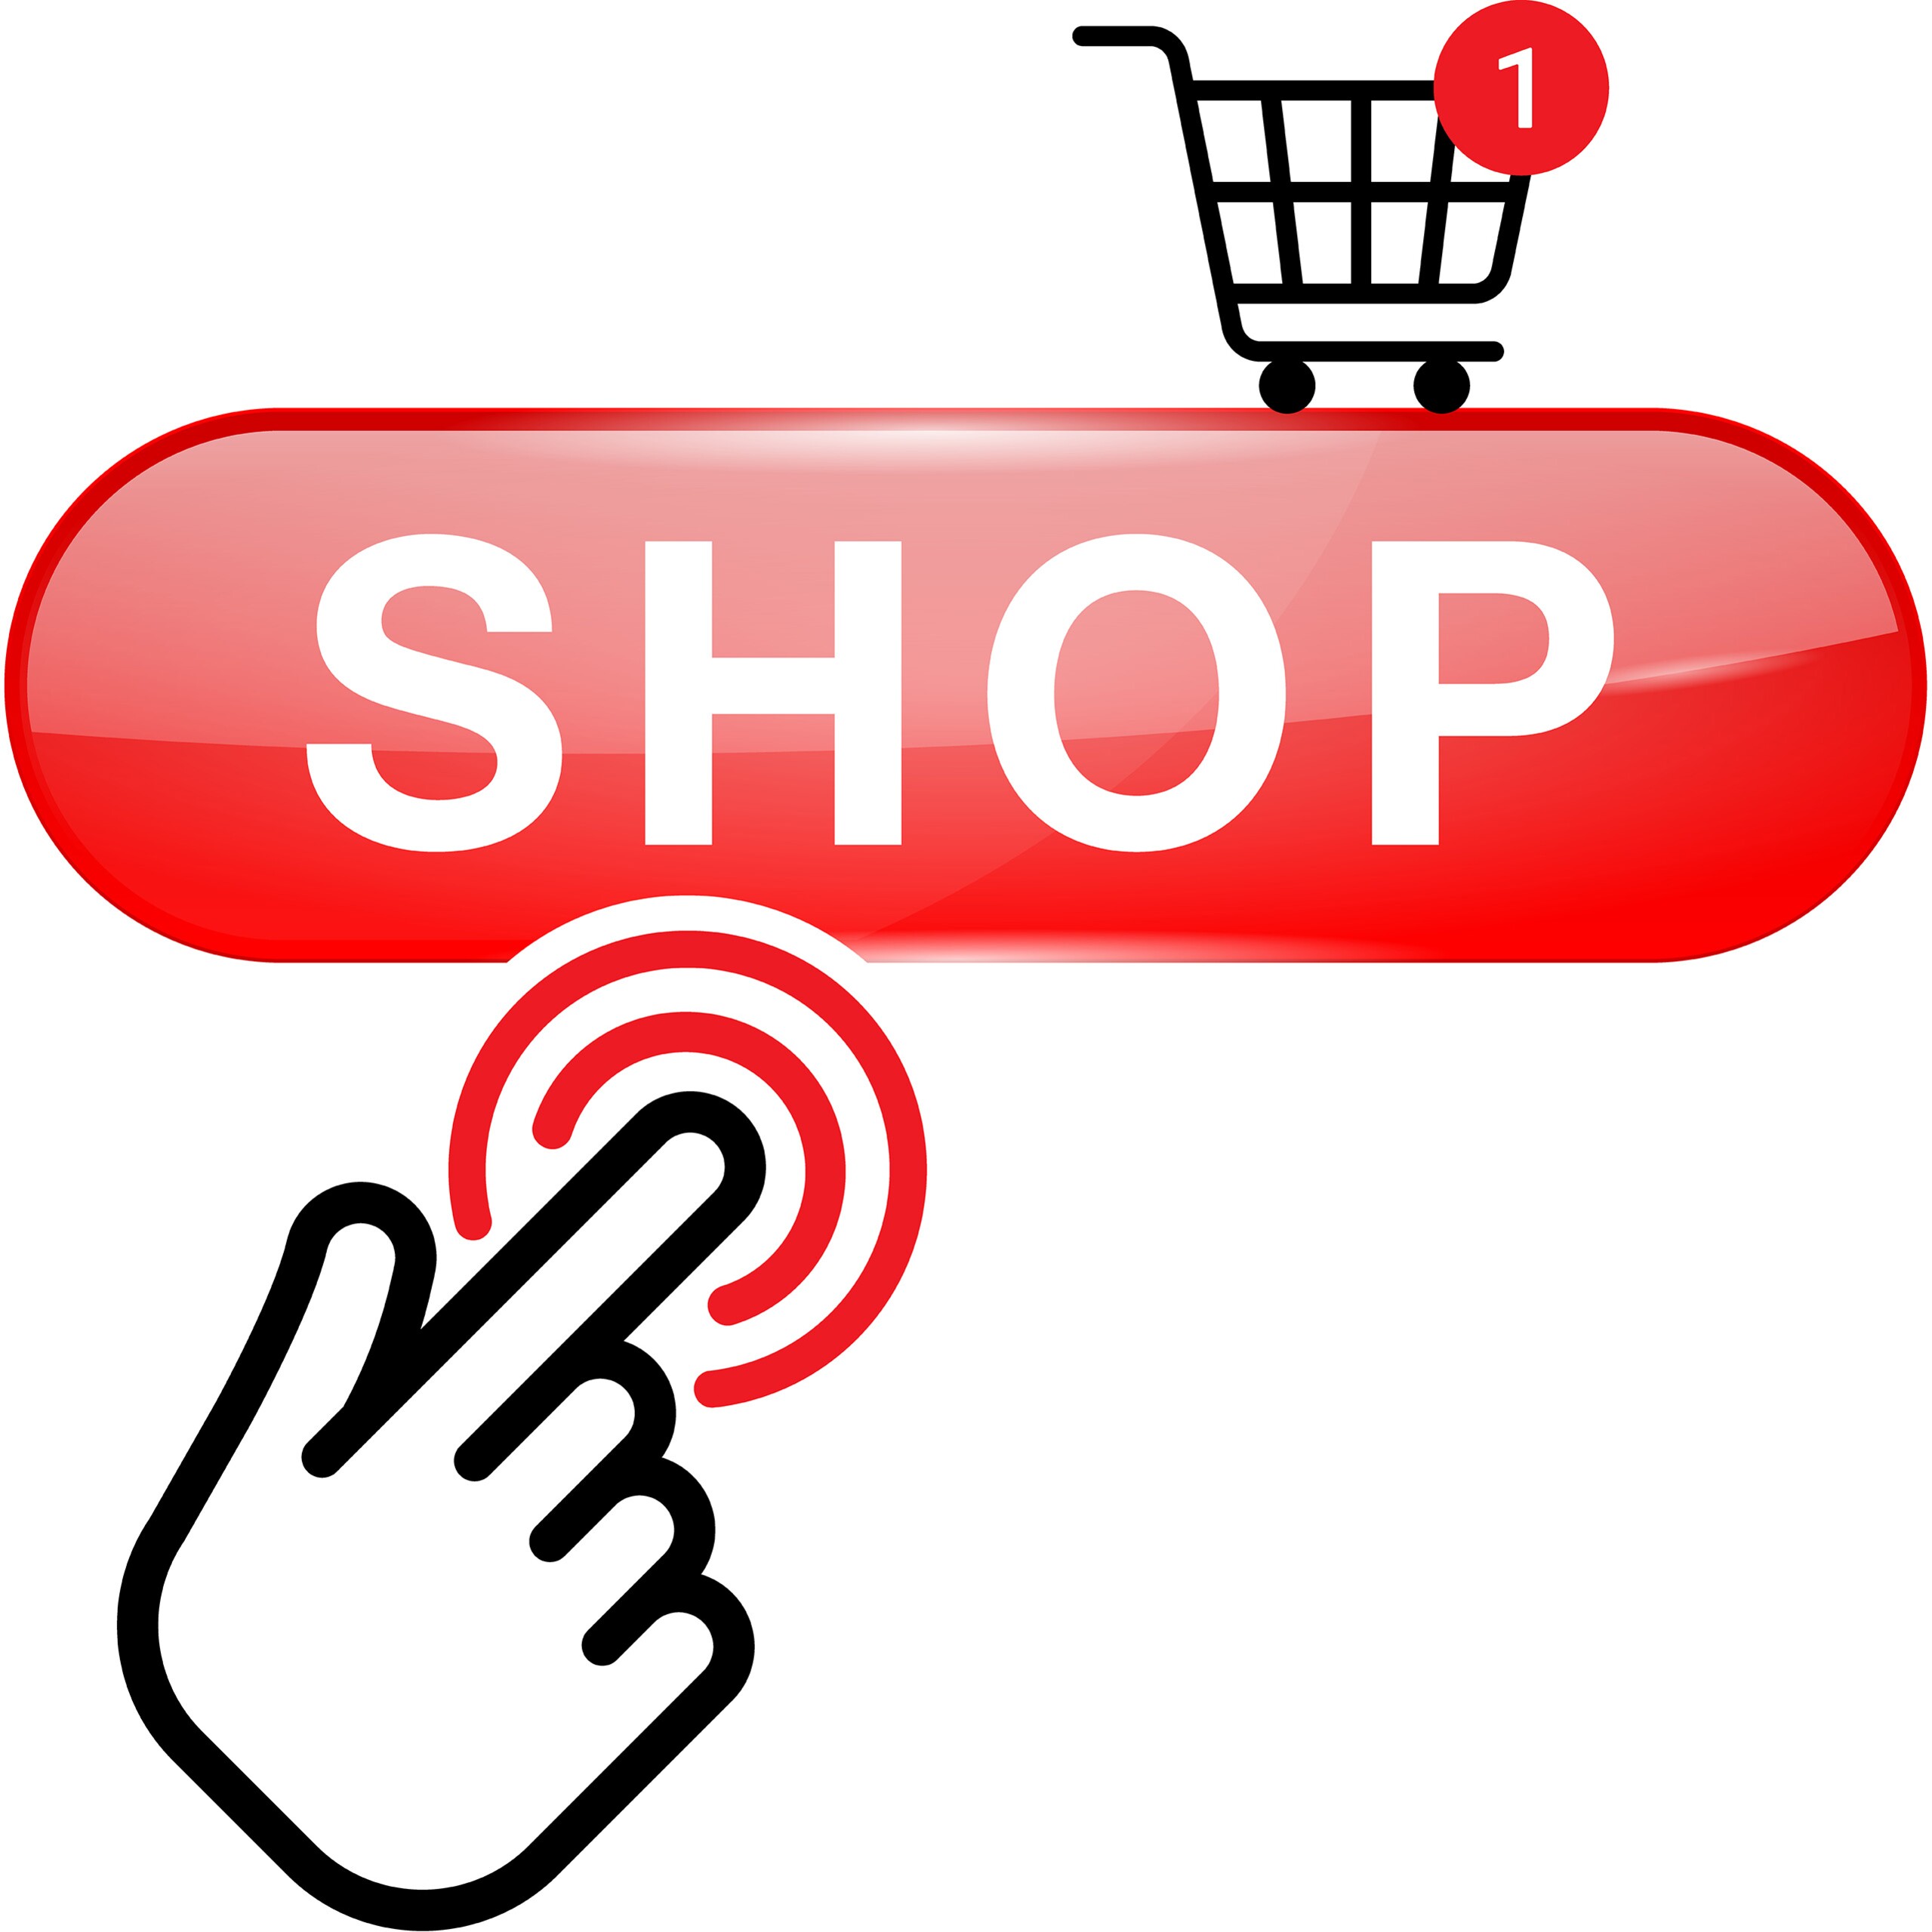 Roter Button, auf dem Shop geschrieben steht, eine Hand die auf den Button klickt und ein Einkaufwagen über dem Button